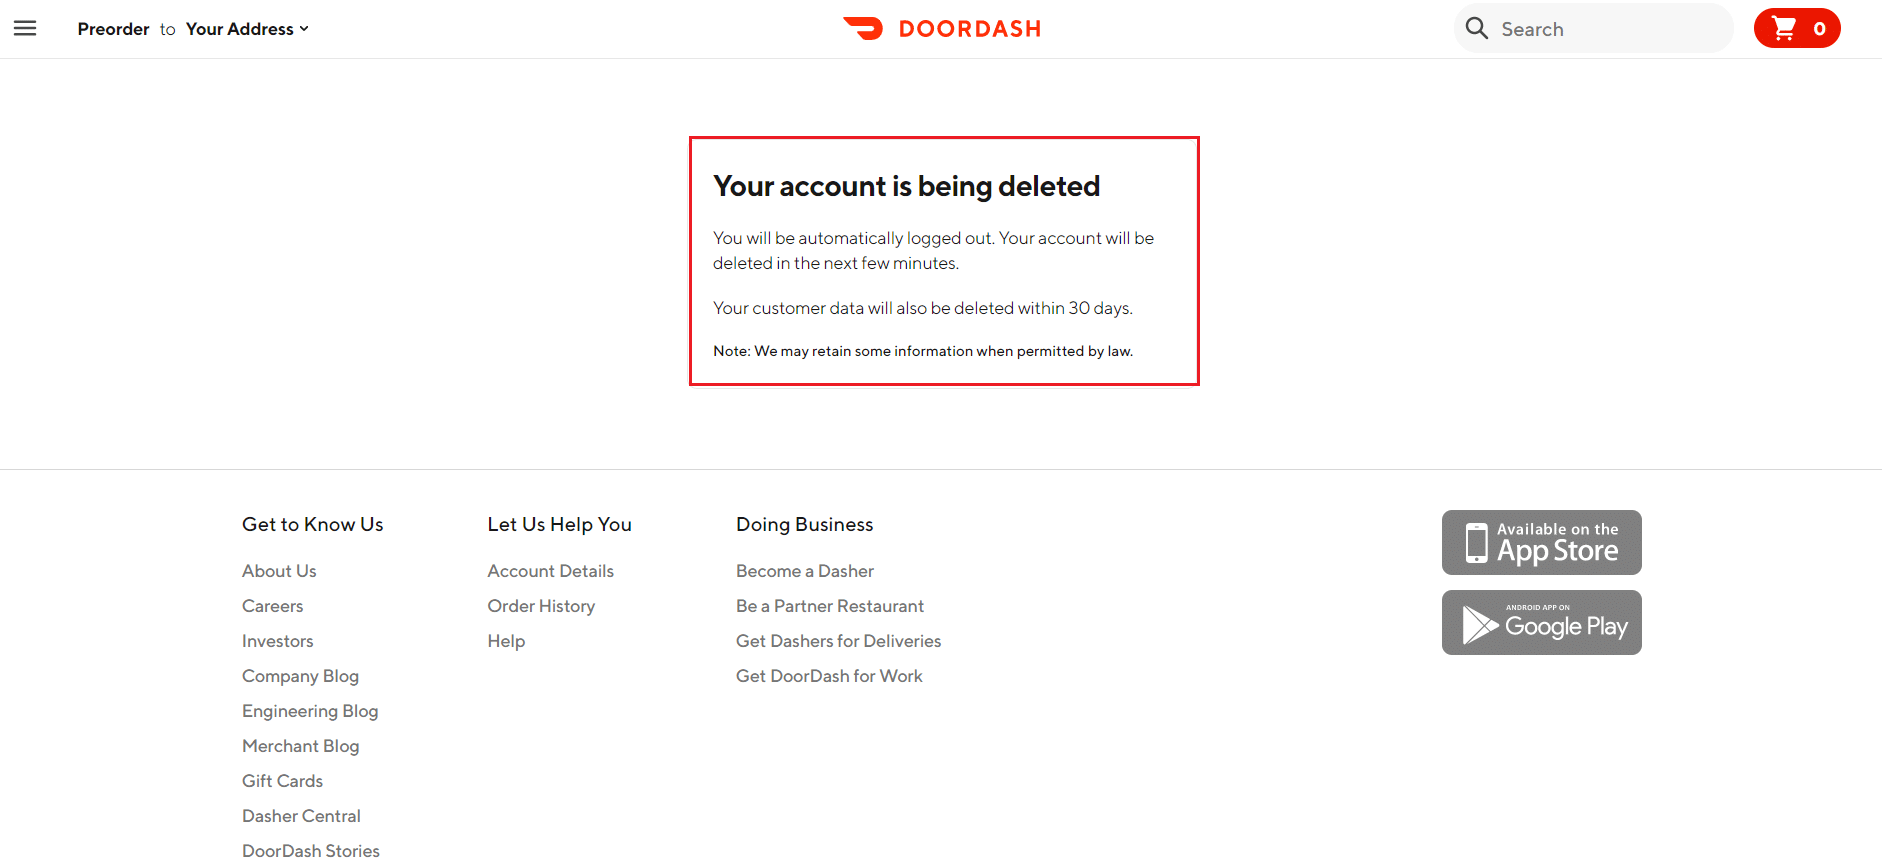 Your account is deleted message in DoorDash website